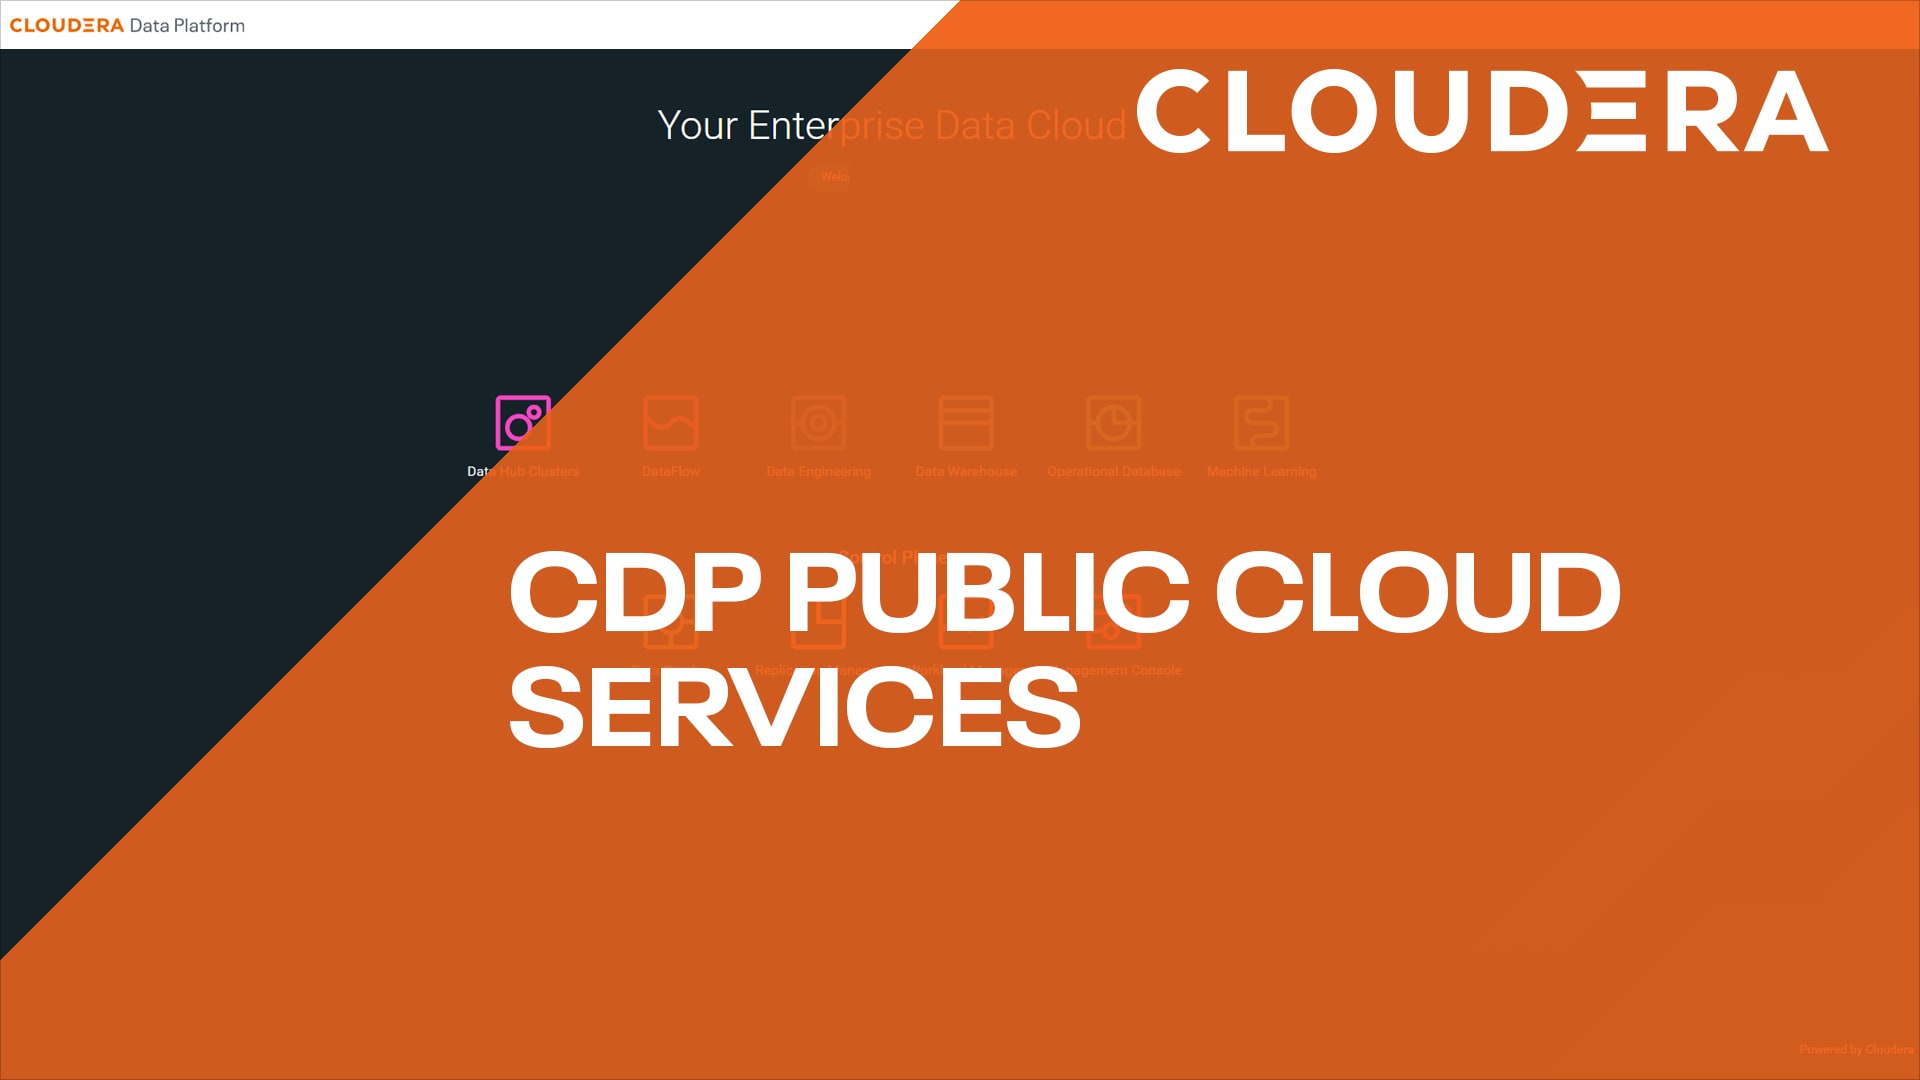 CDP Public Cloud Services